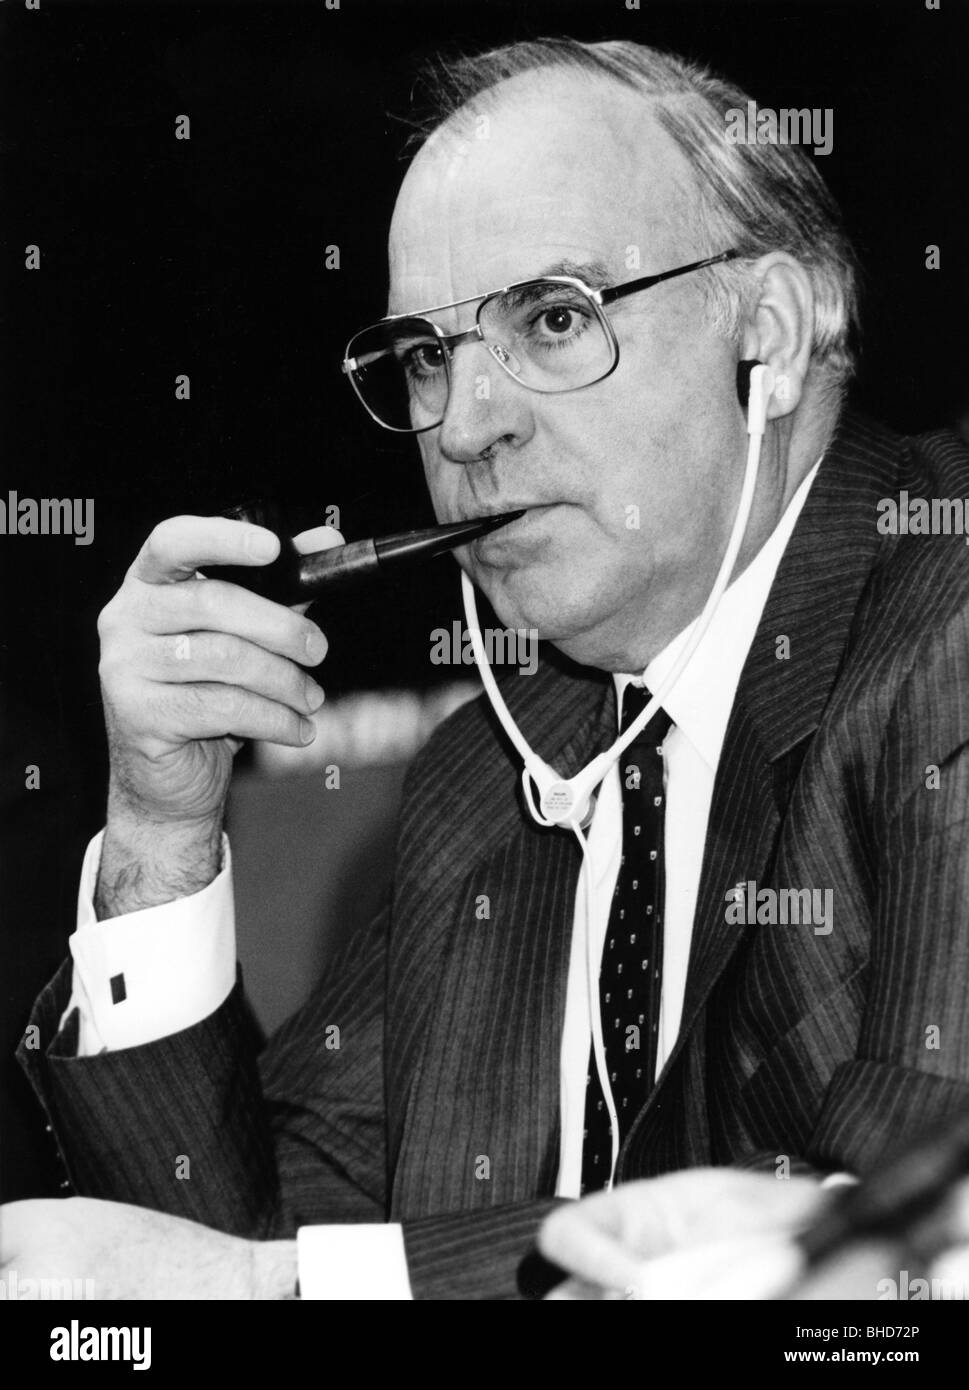 Kohl, Helmut, * 3.4.1930, politico tedesco (CDU), cancelliere federale 4.10.1982 - 26.10.1998, ritratto, durante il congresso del Partito Popolare europeo, Den Haag, Paesi Bassi, 1986, Foto Stock